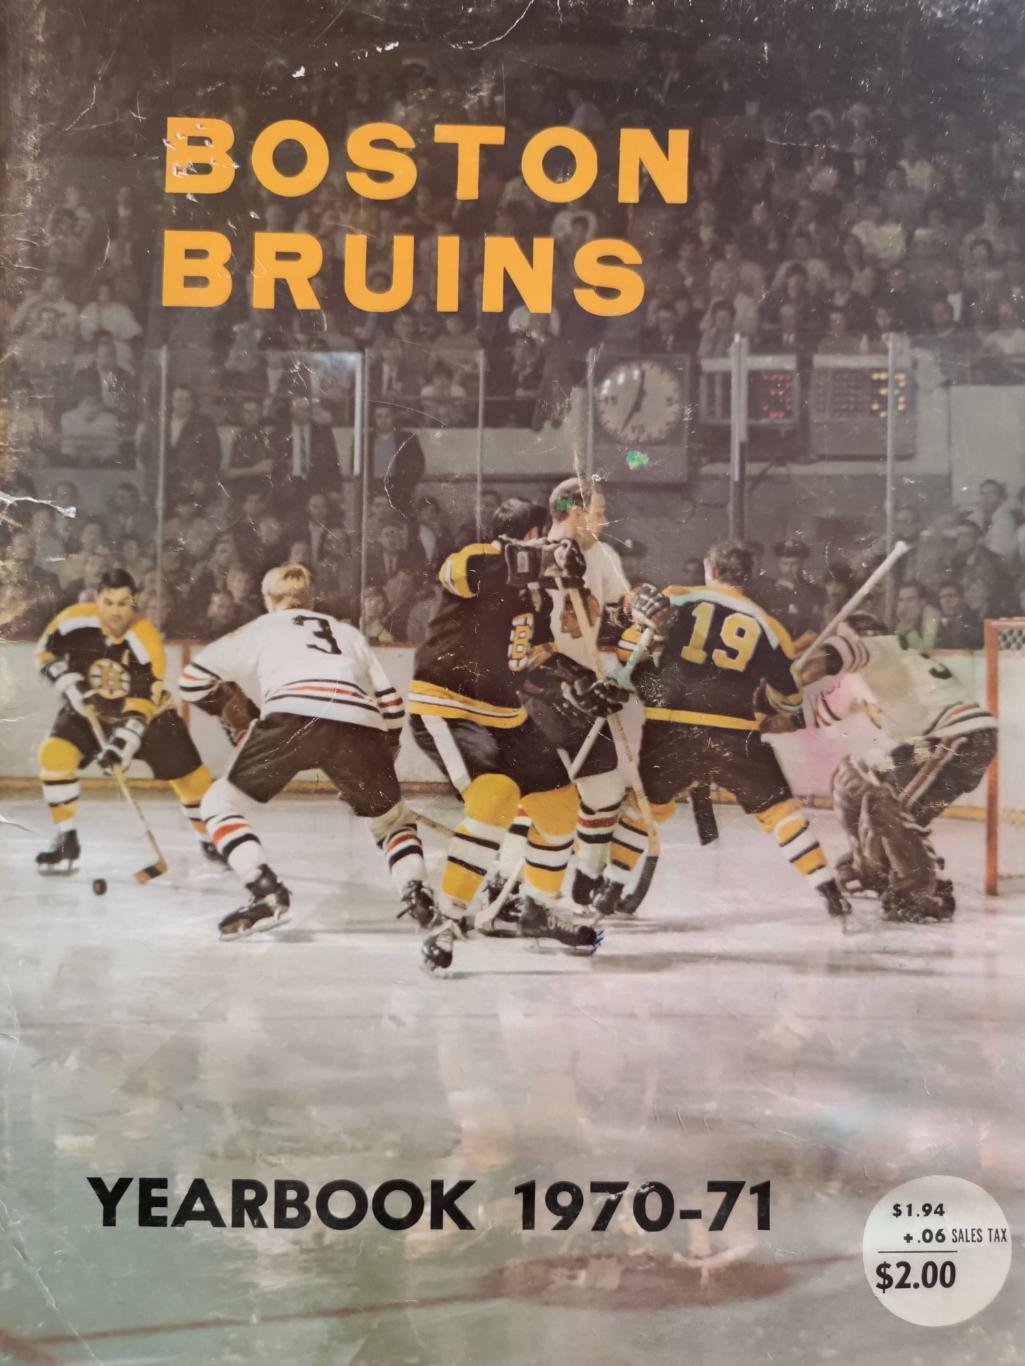 ХОККЕЙ АЛЬБОМ ЕЖЕГОДНИК НХЛ БОСТОН БРЮИНЗ 1970-71 NHL YEARBOOK BOSTON BRUINS